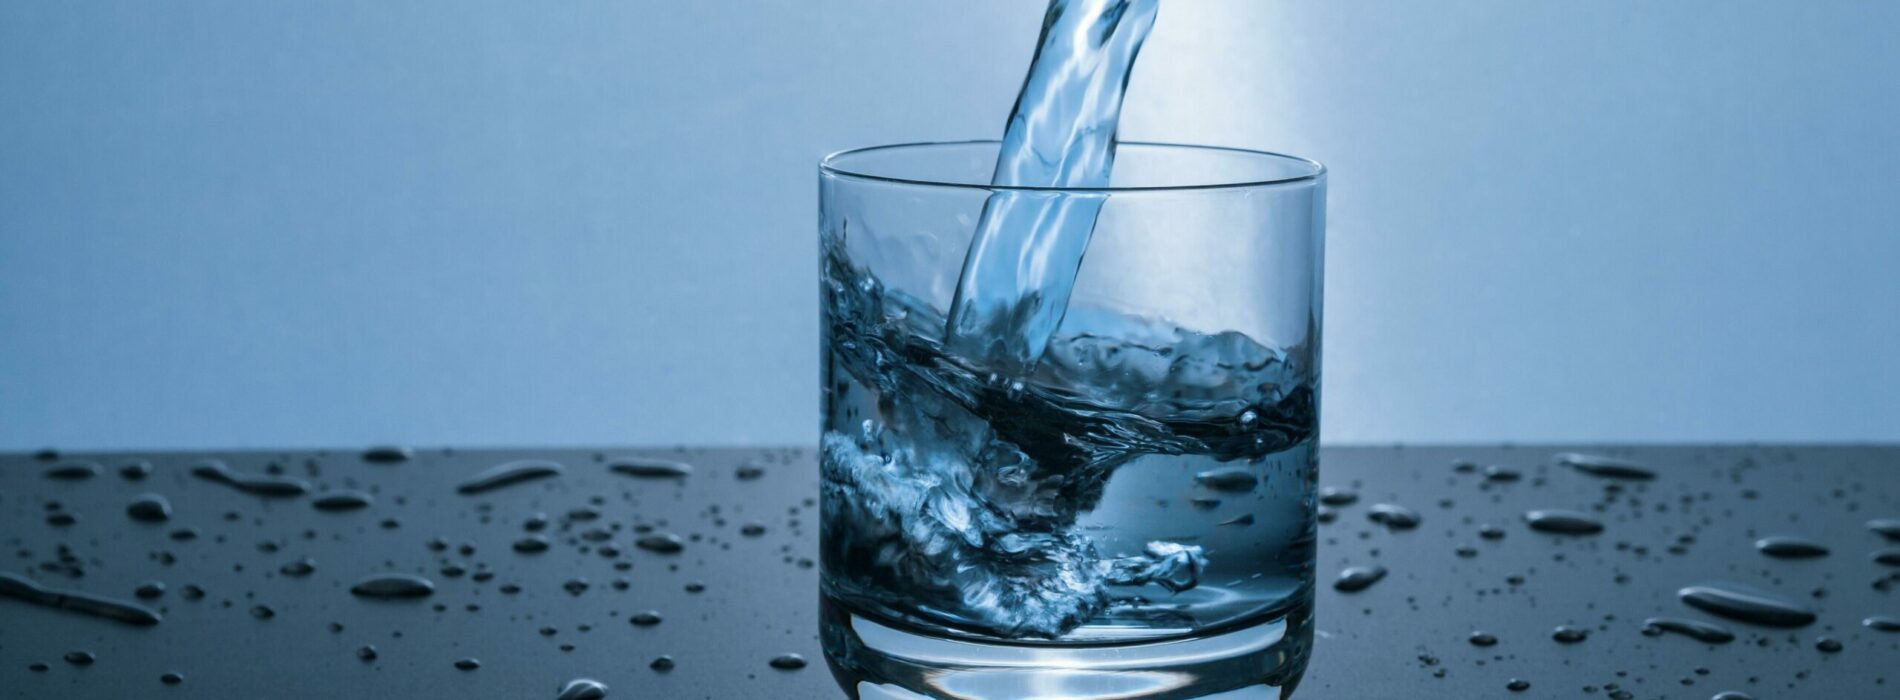 Jaka jest różnica między zmiękczaczem wody a filtrem do wody?